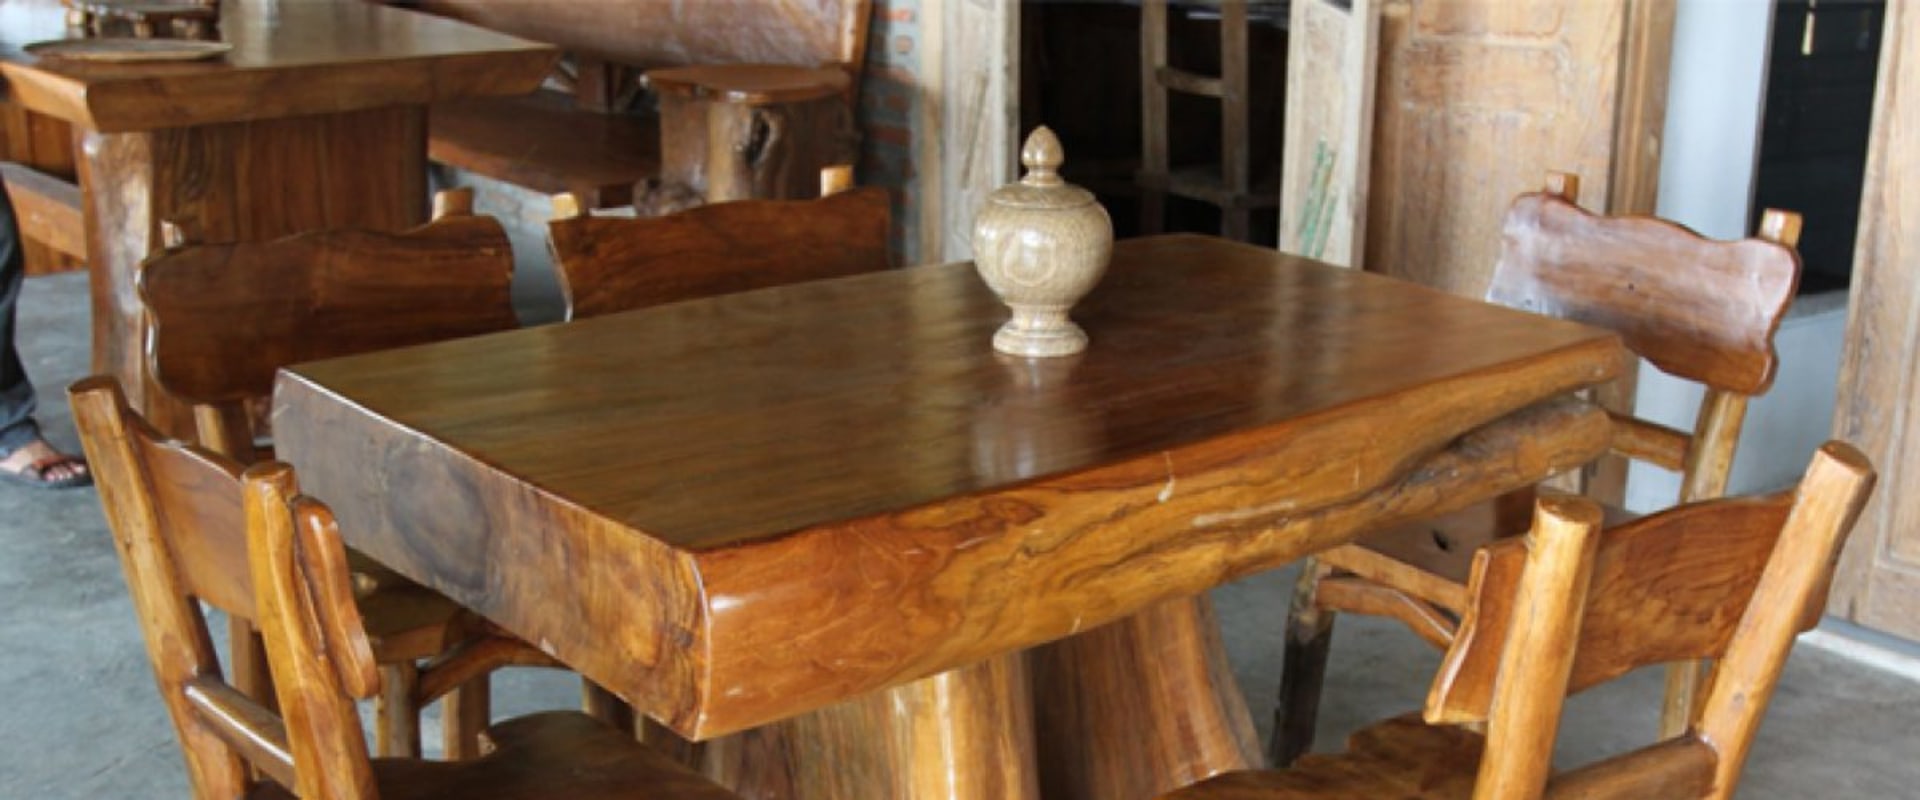 Kunnen houten meubels binnenshuis buiten worden gebruikt?